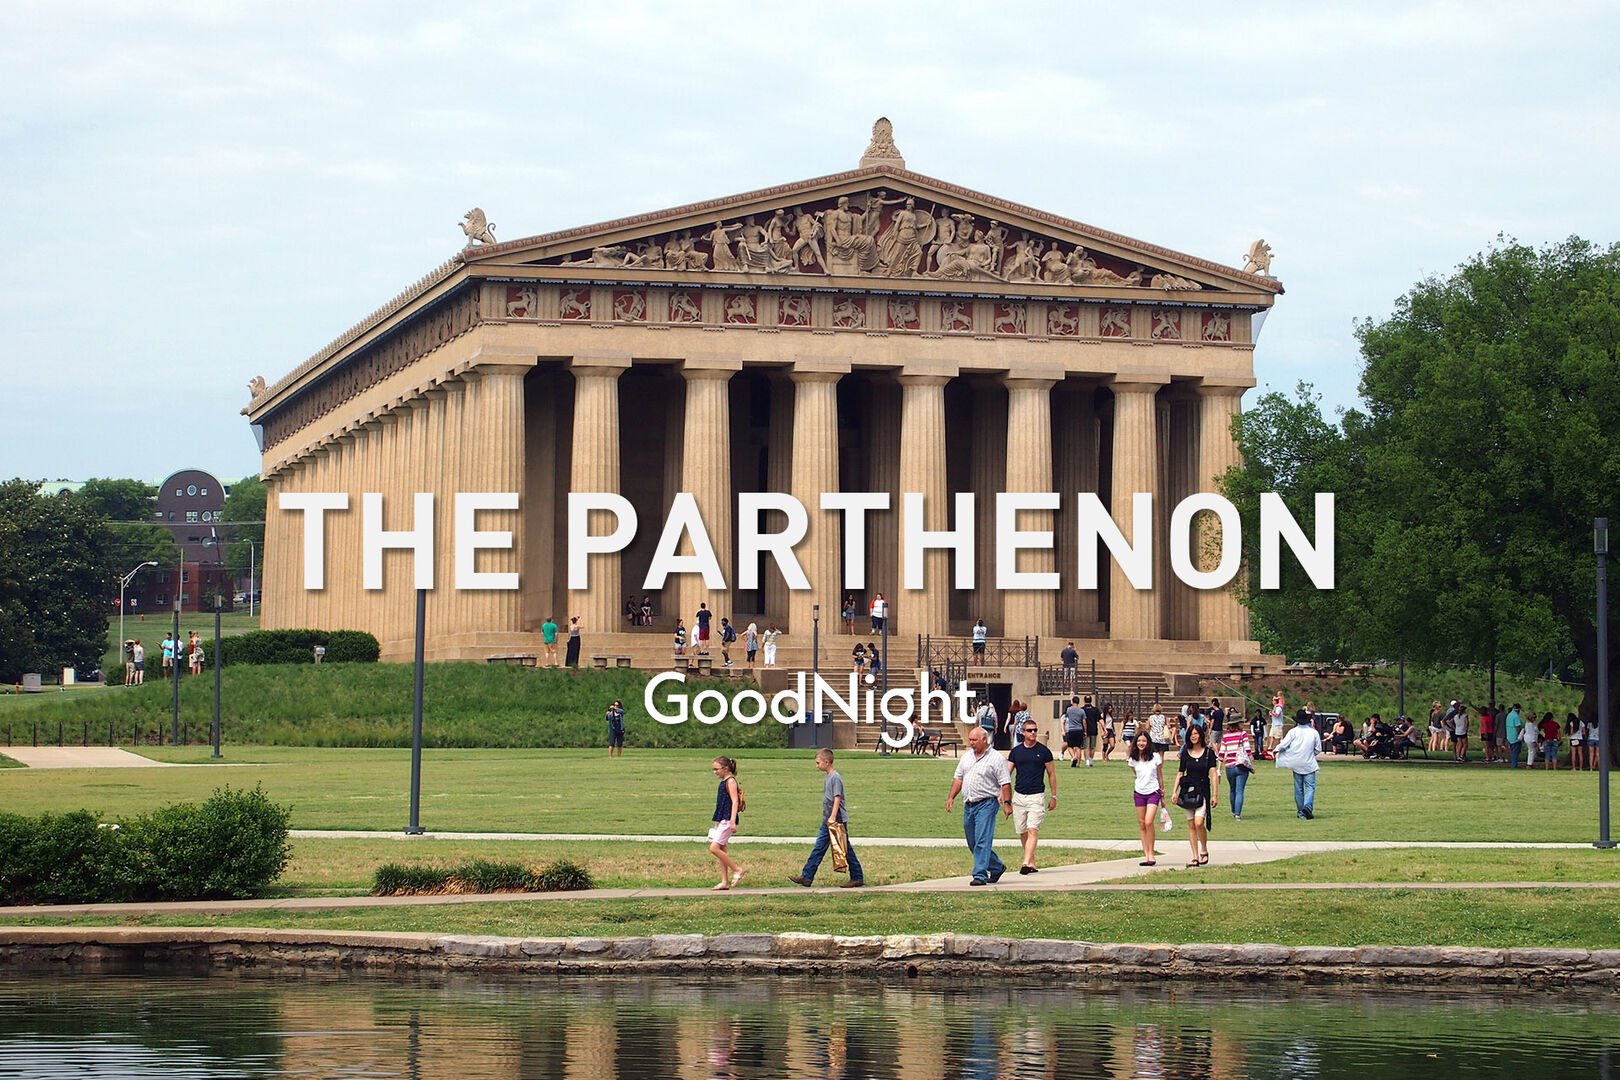 8 mins: The Parthenon